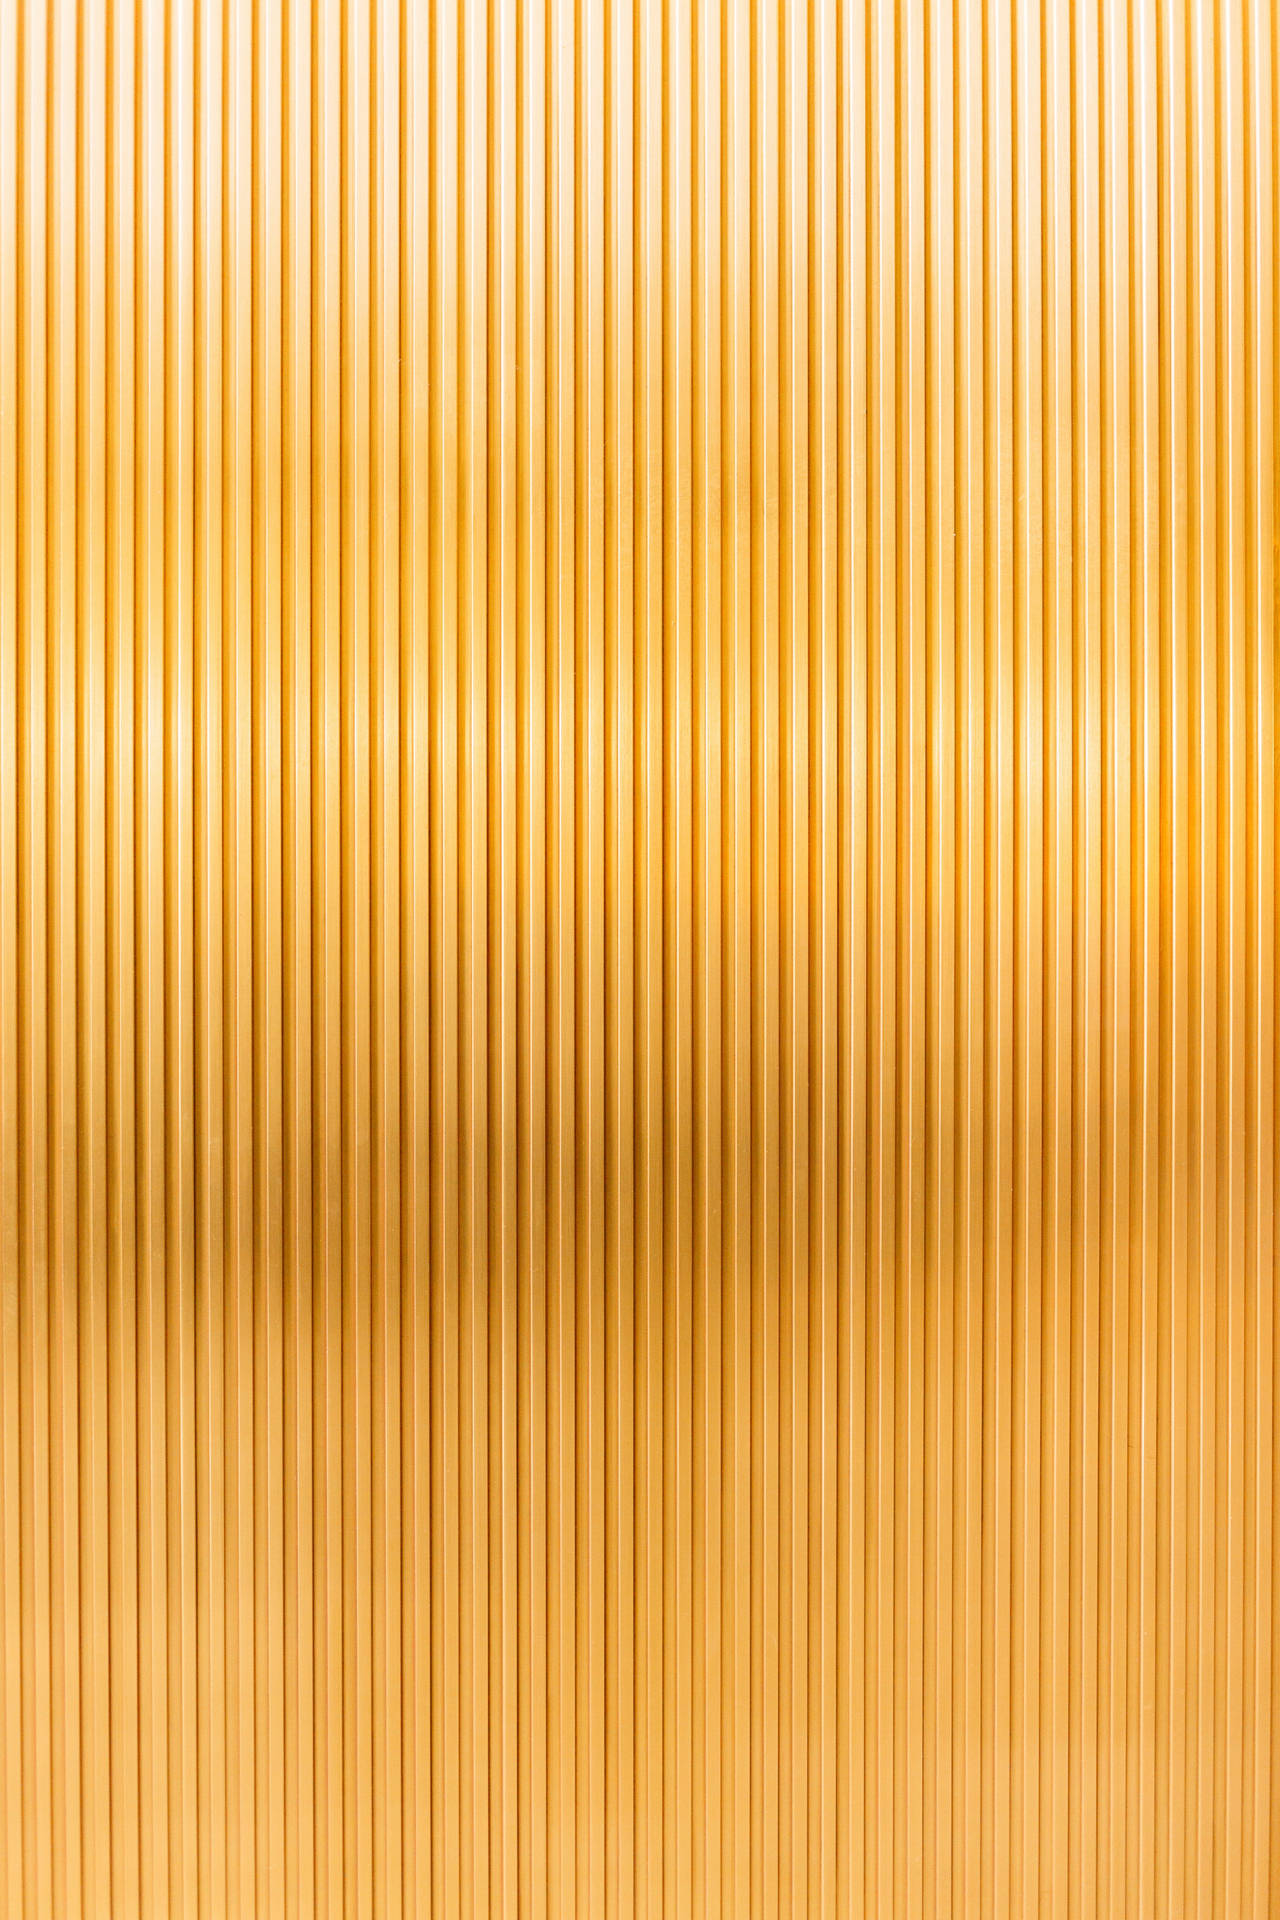 Redmi 4k Gold Stripes